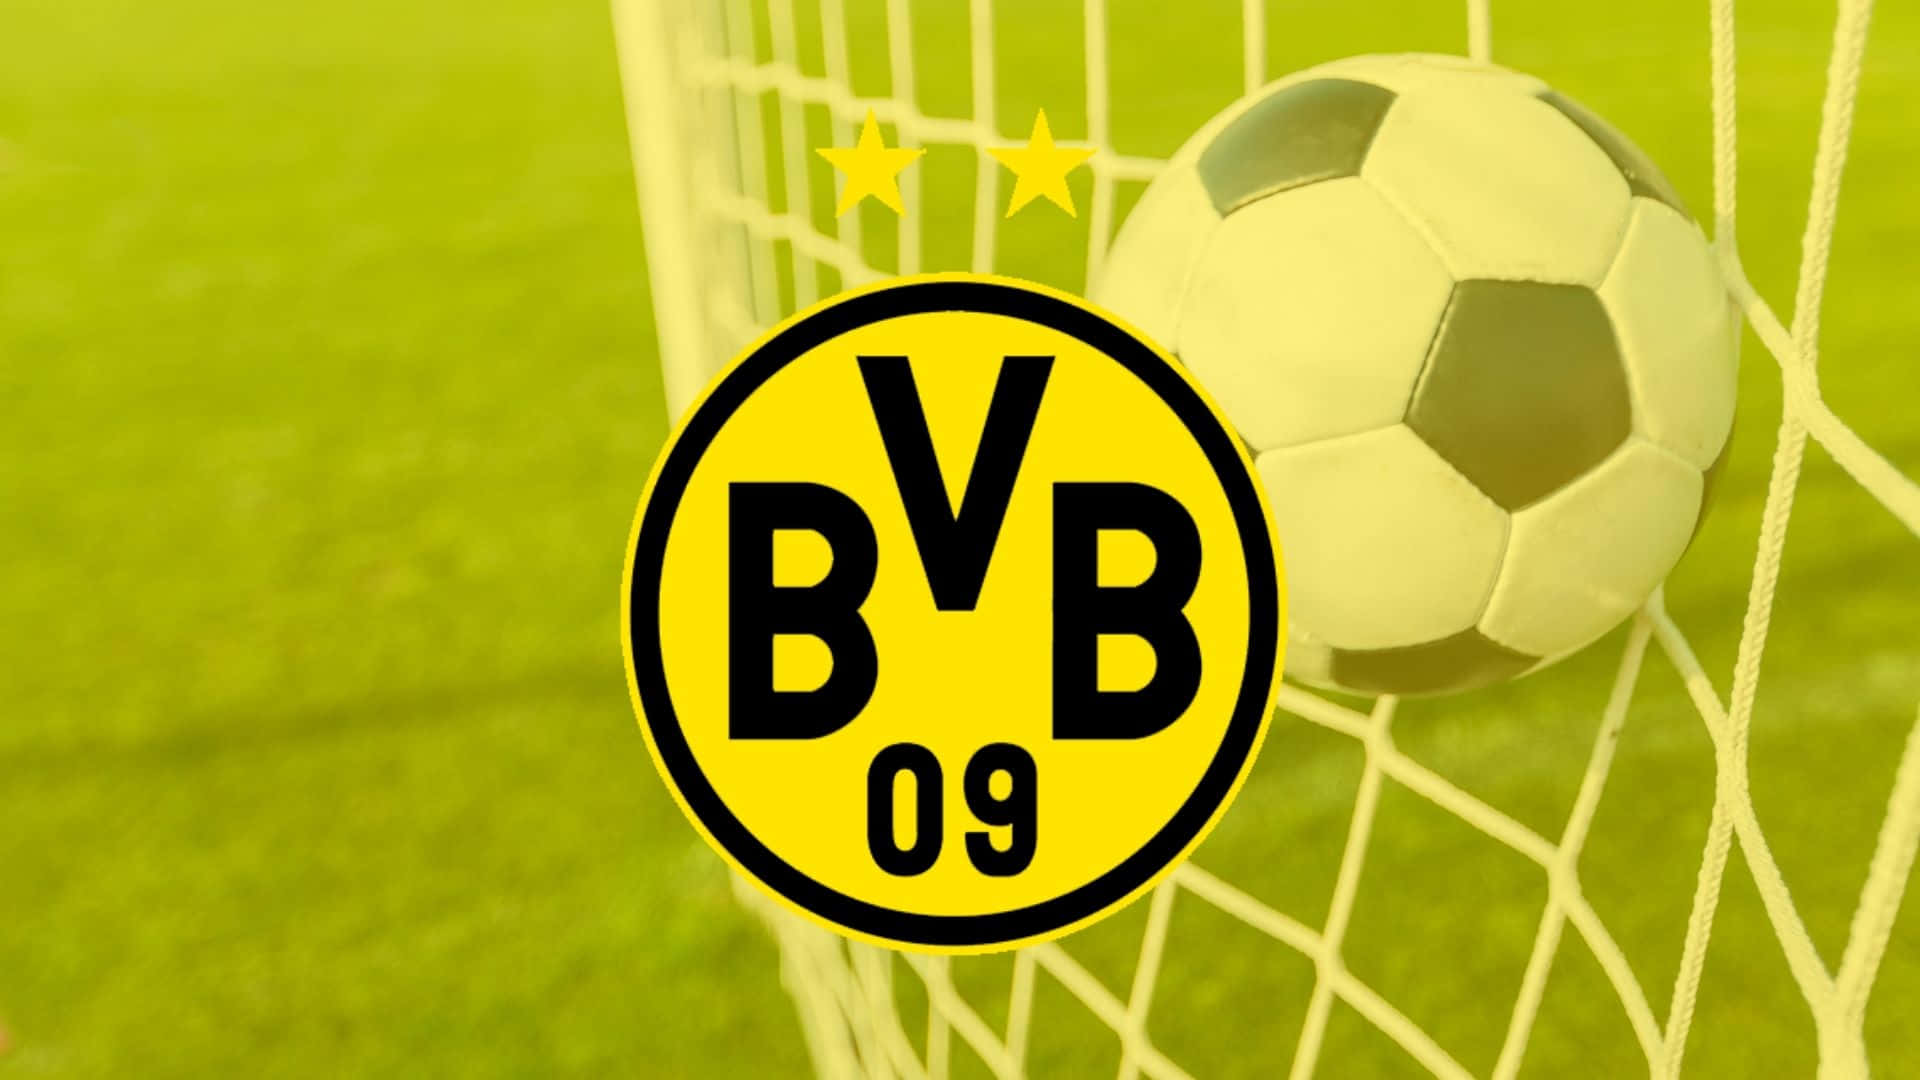 Ilcaratteristico Giallo E Nero Del Borussia Dortmund. Sfondo